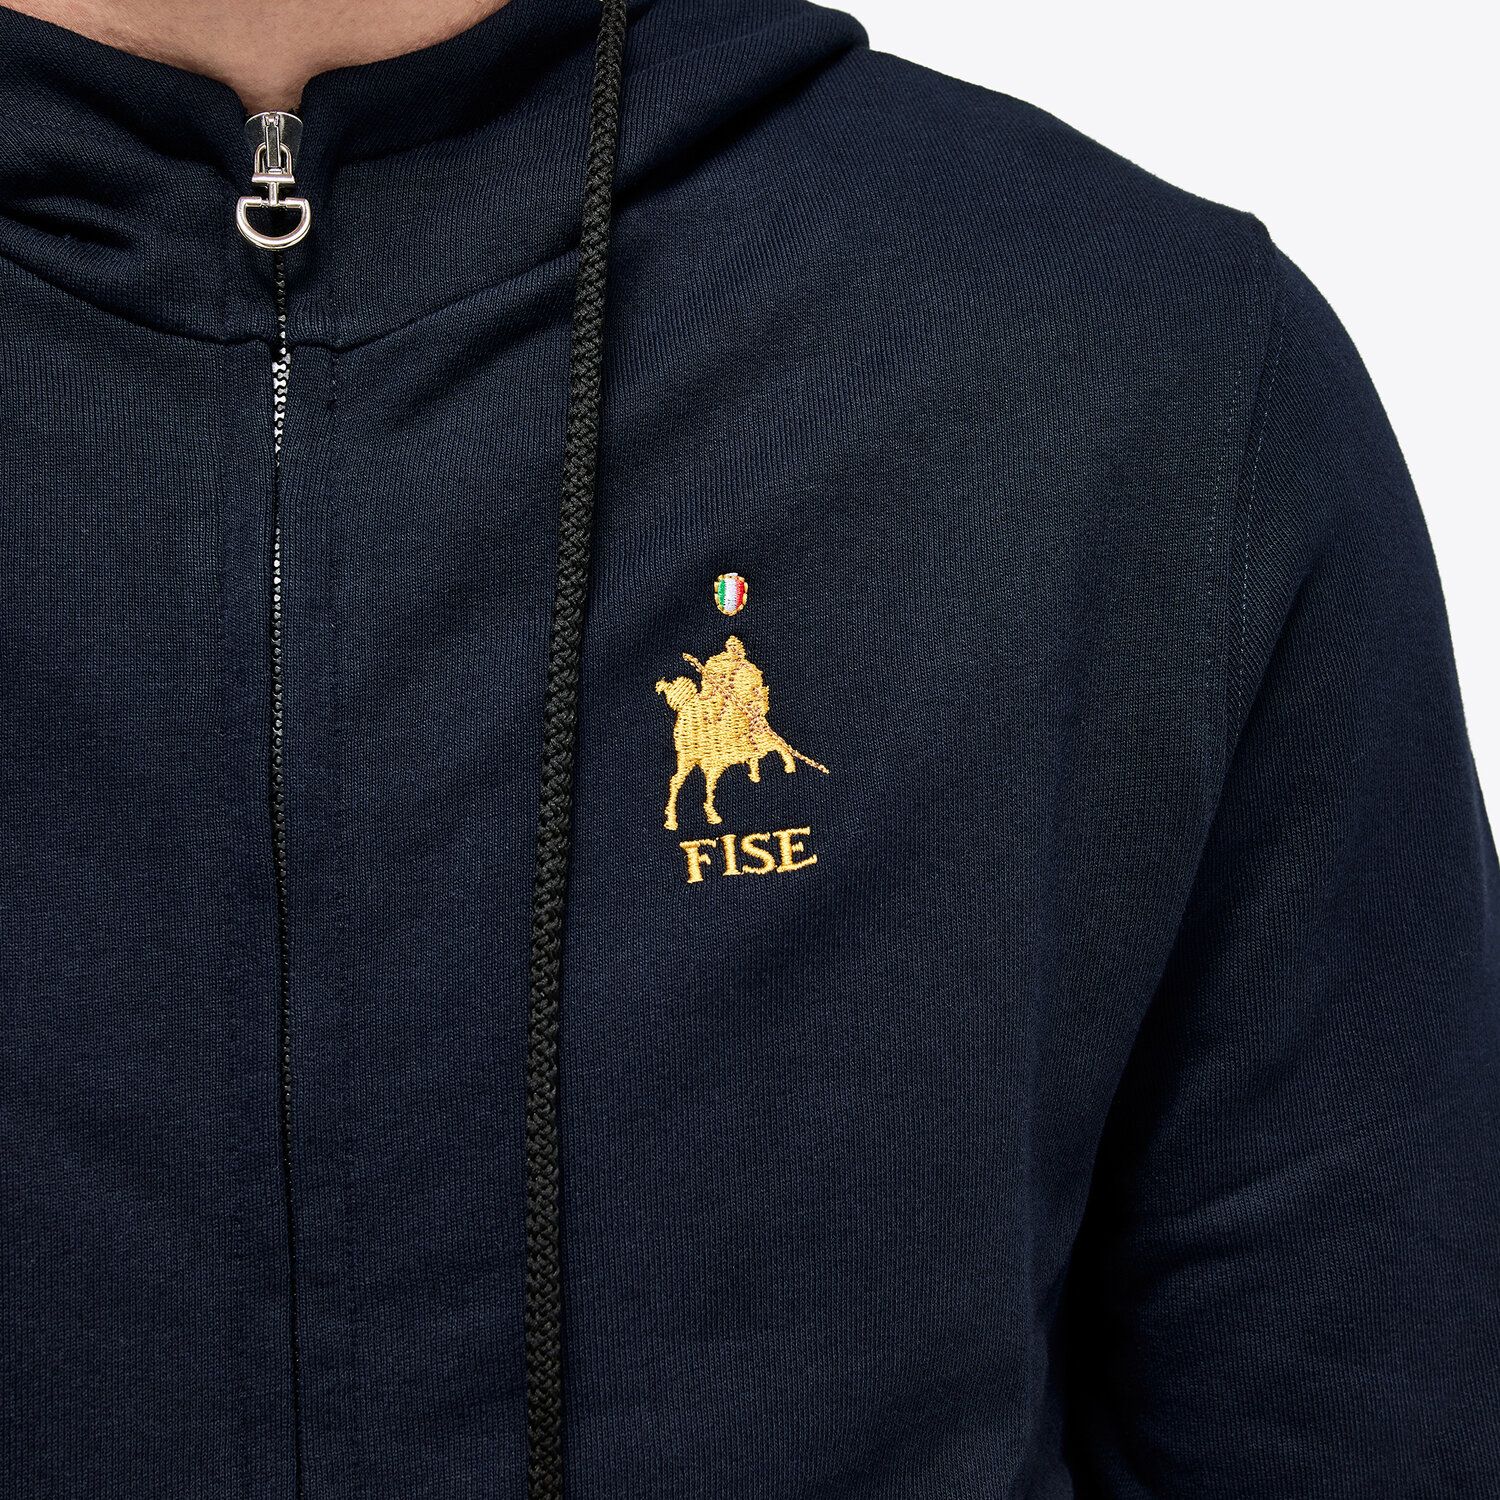 Cavalleria Toscana FISE hoodie sweatshirt NAVY-4